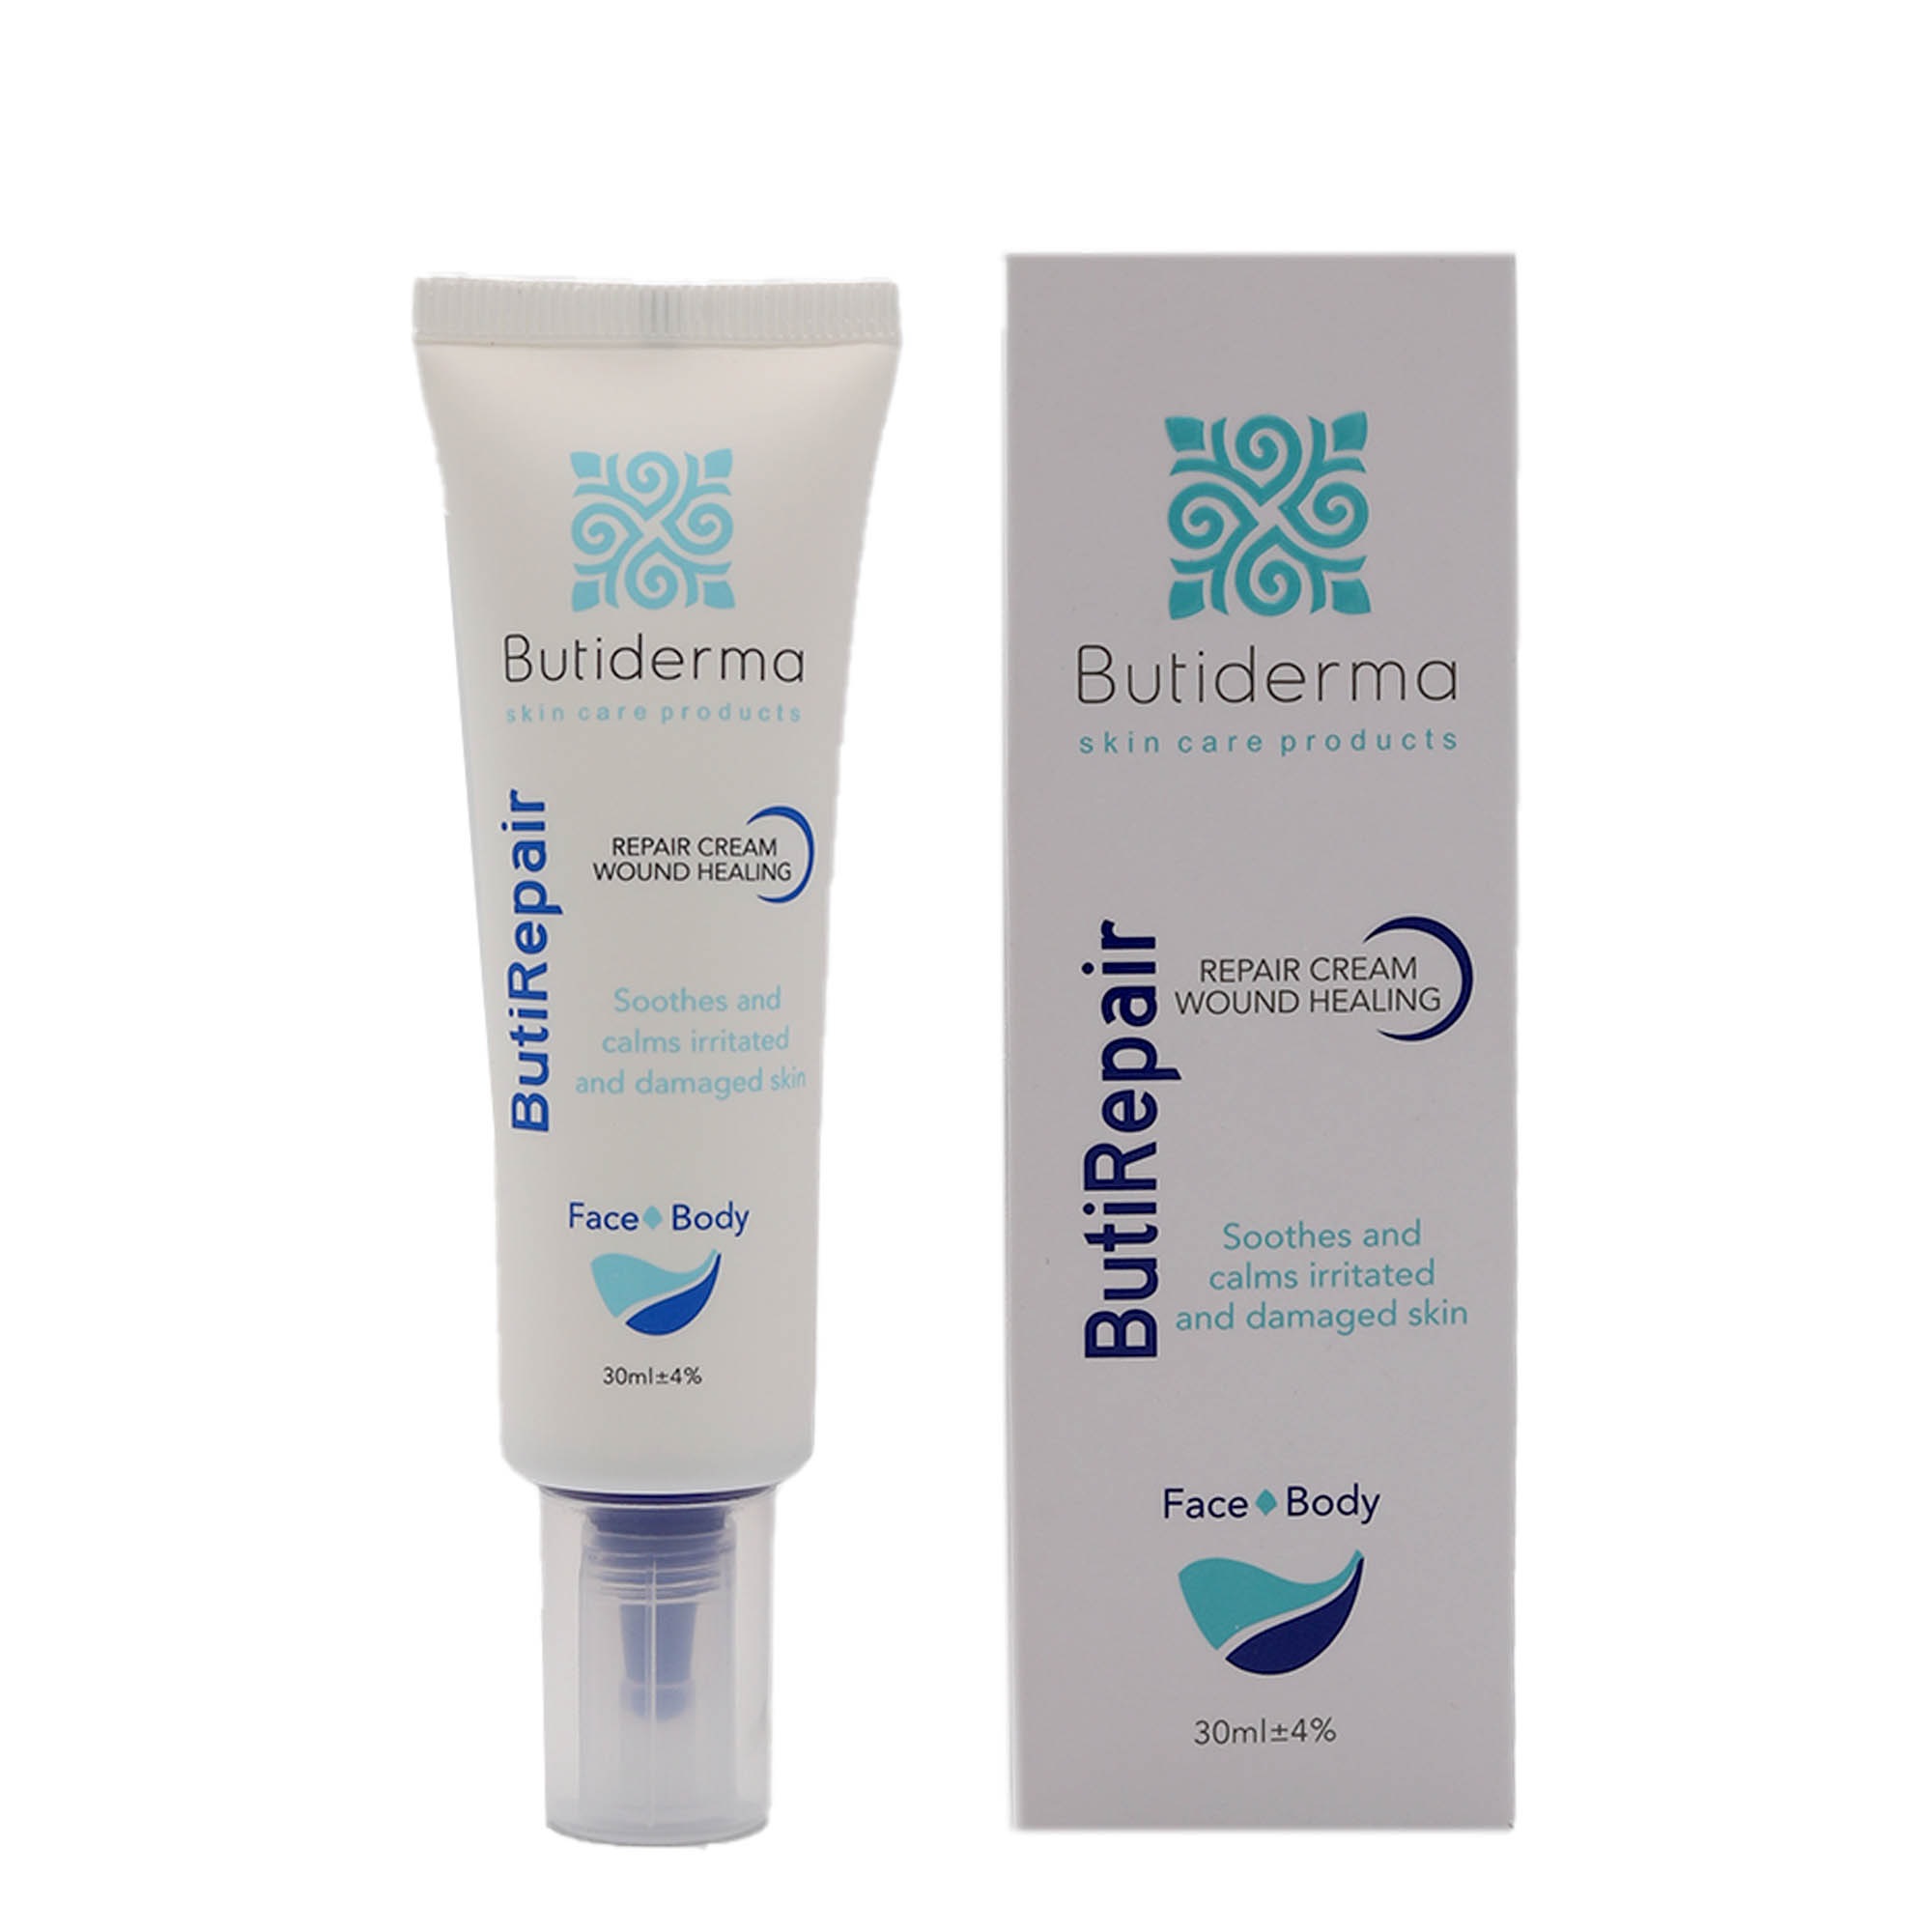 Bioterma repair cream - BUTIDERMA